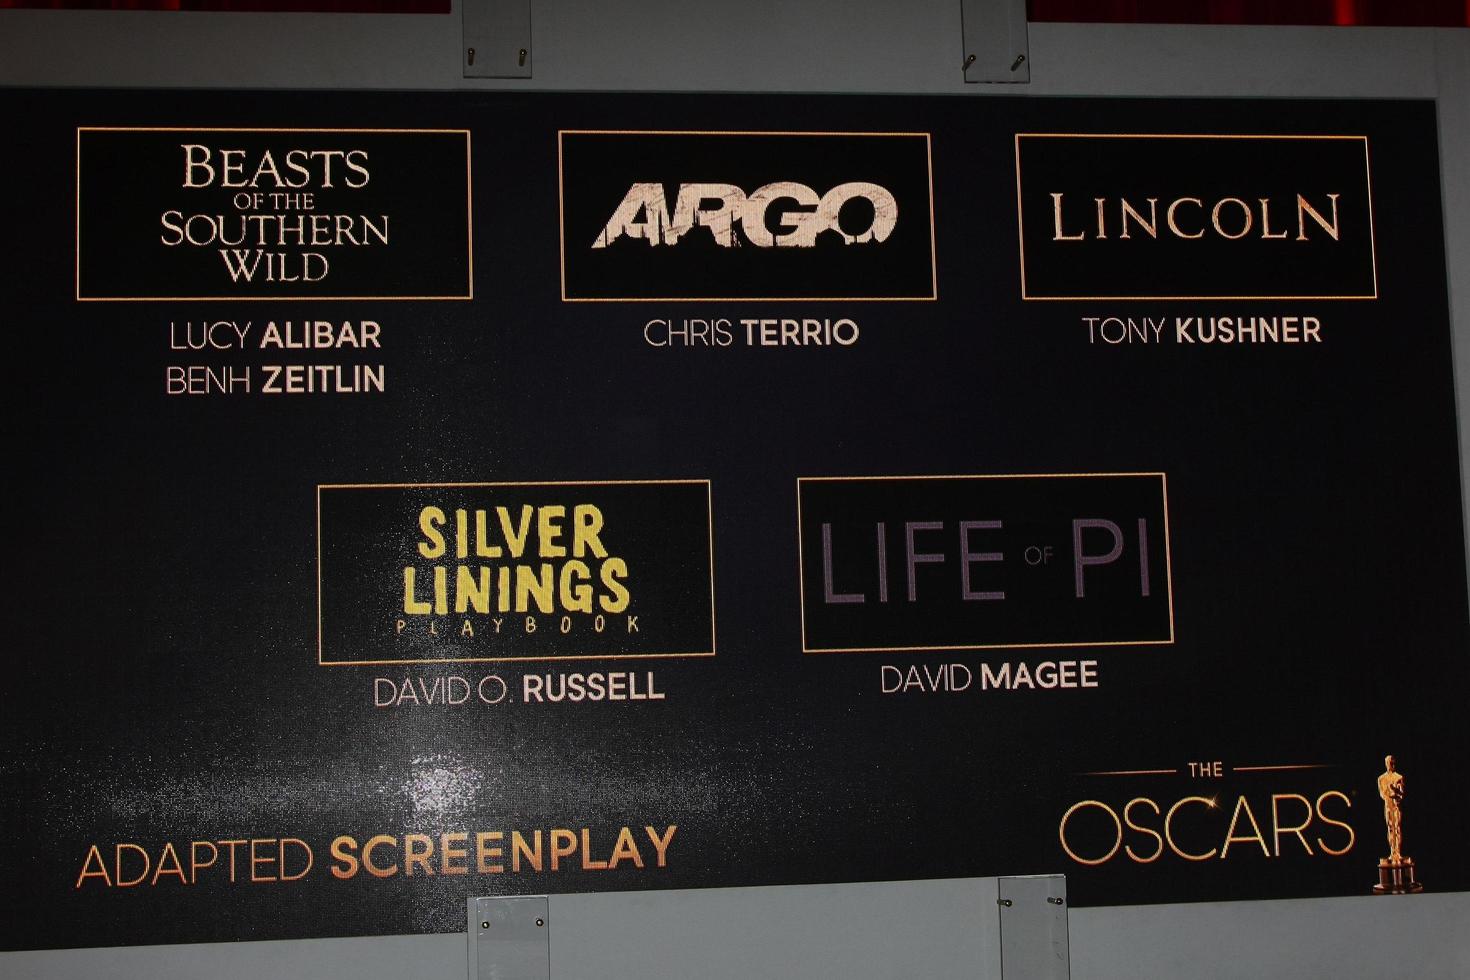 los angeles, 10 de janeiro - indicações de roteiro adaptado no Oscar 2013 anúncios de indicações no teatro samuel goldwyn em 10 de janeiro de 2013 em beverly hills, ca foto